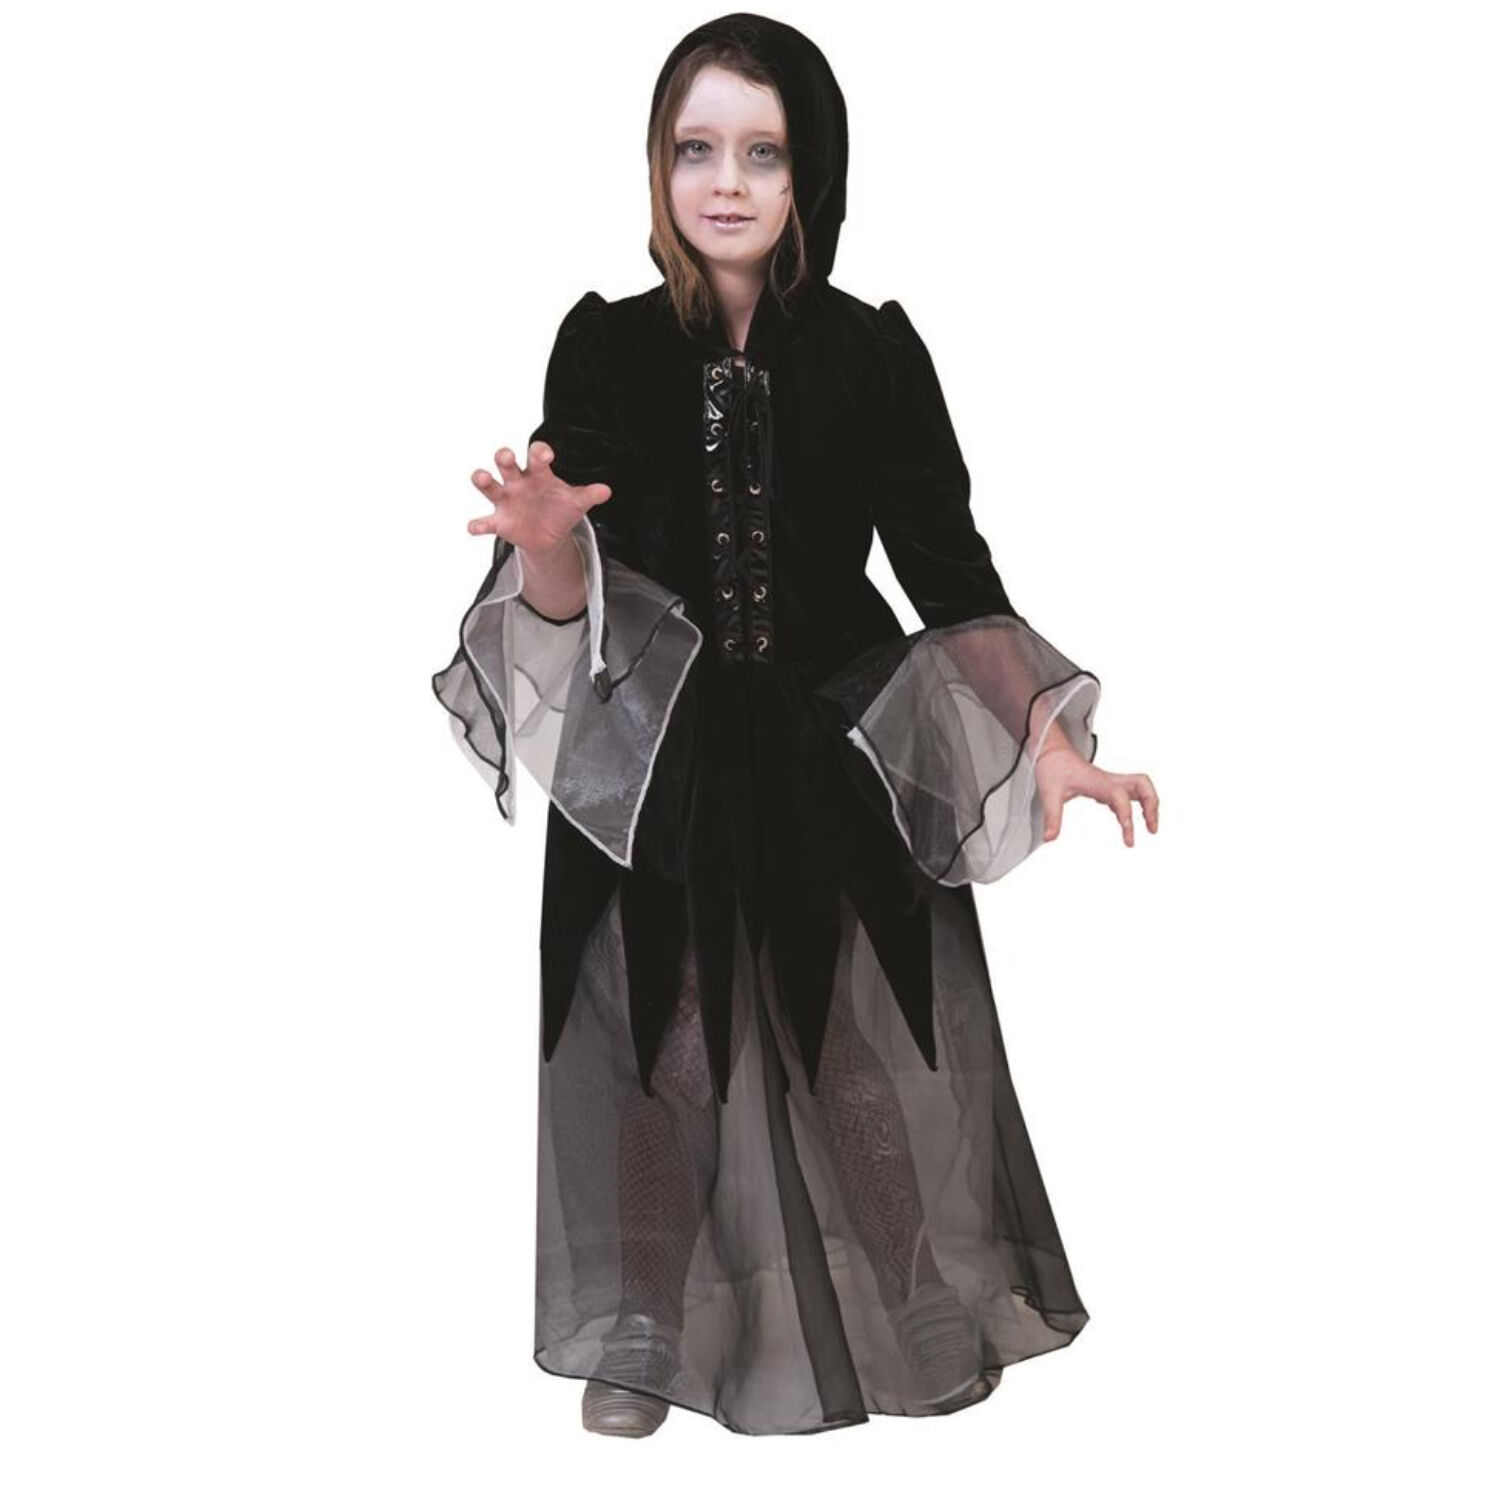 NEU Kinder-Kostüm Hexenkleid Dolores, 2-tlg. Mit Haube, schwarz, Gr. 128